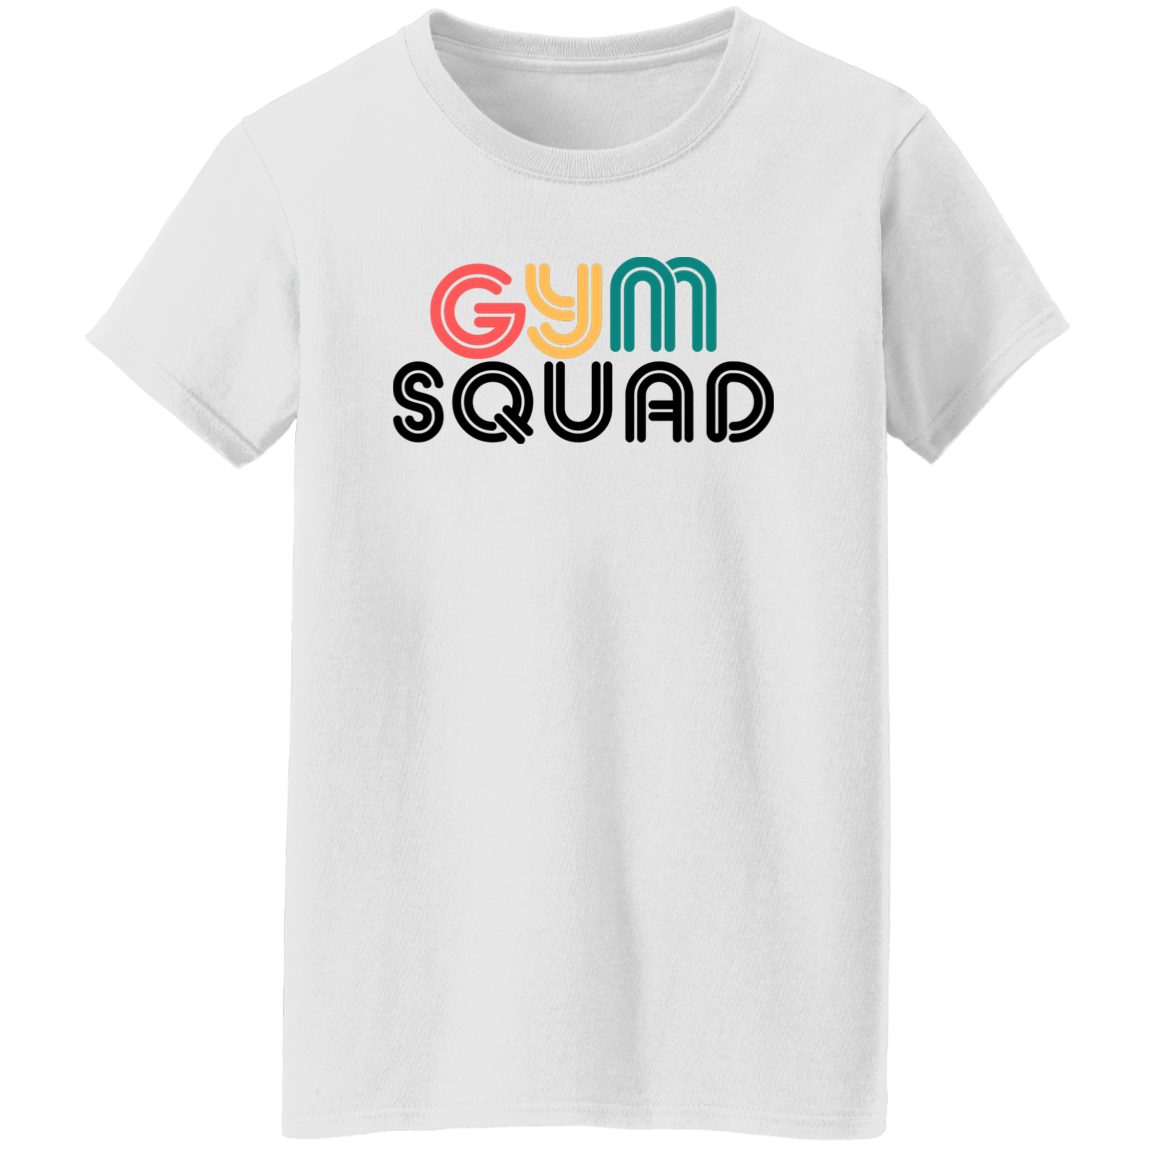 Gym Squad Ladies' 5.3 oz. T-Shirt